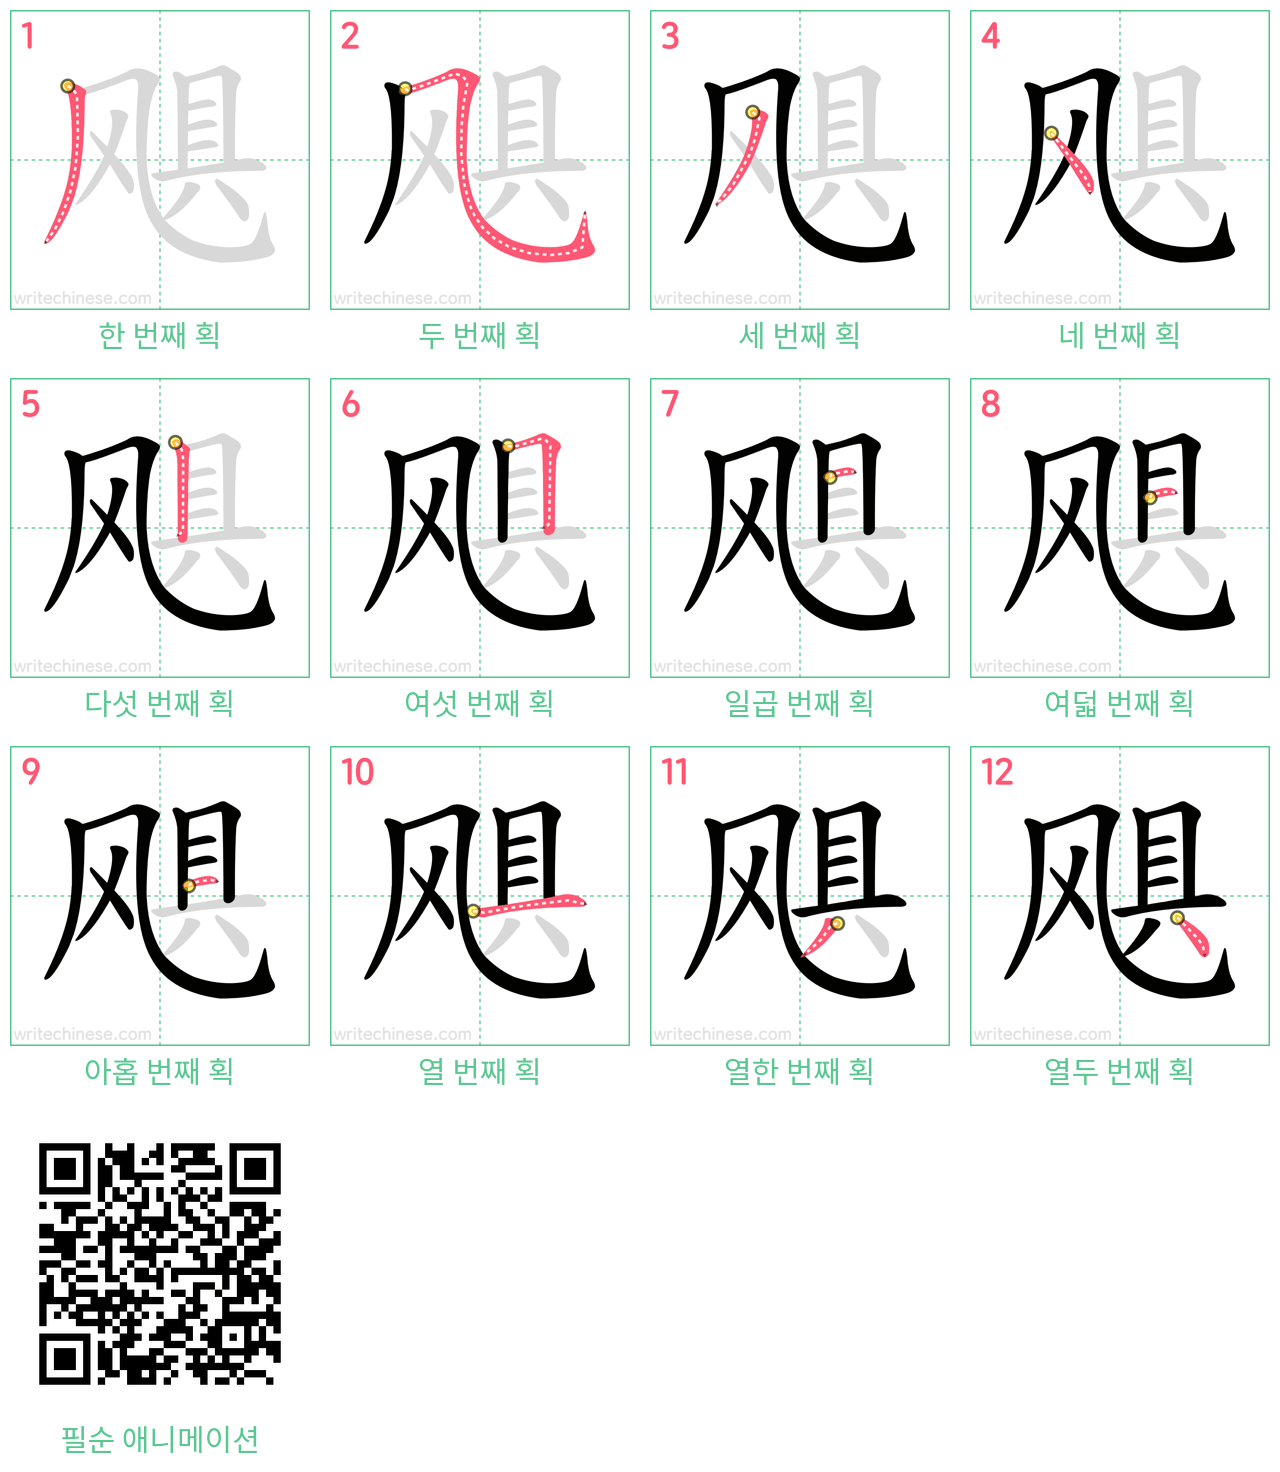 飓 step-by-step stroke order diagrams